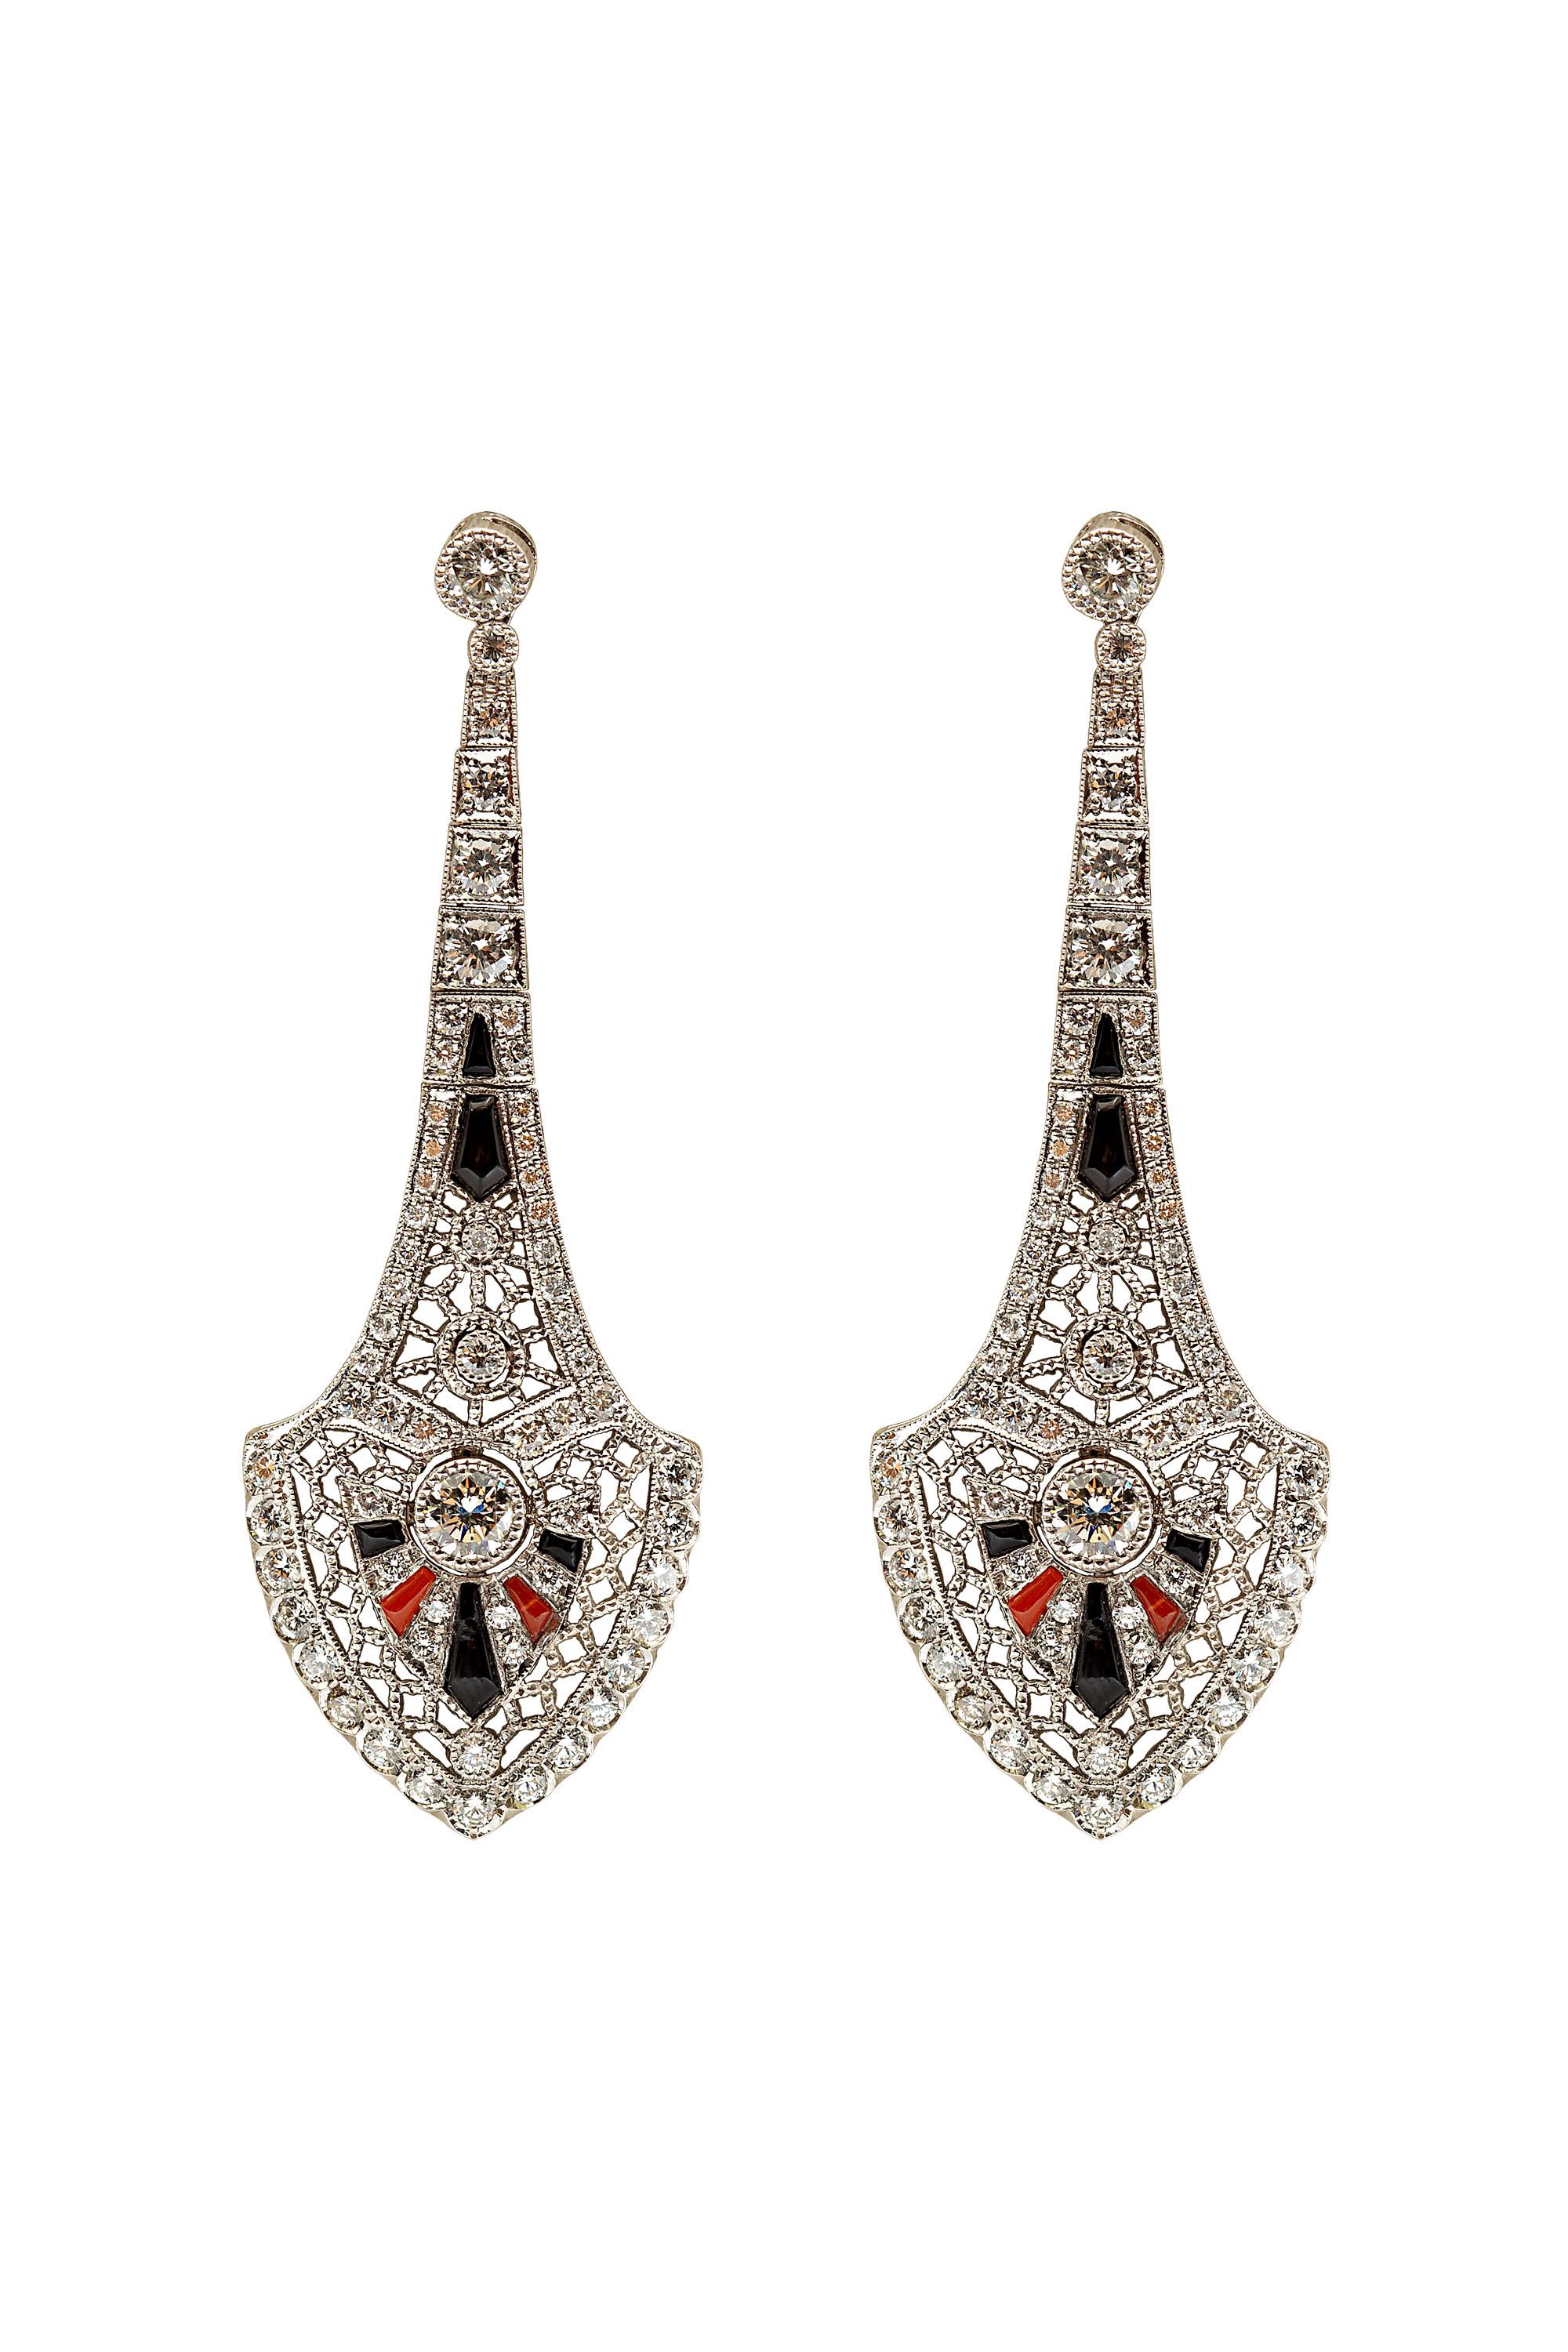 Diese wunderschönen Ohrringe von Gems Are Forever, Inc. sind von der Art Deco Ära inspiriert und in Platin gefertigt. Die Ohrringe haben 4,70 Karat Diamanten und sind mit schwarzem Onyx und Koralle akzentuiert. Entworfen und gefertigt von Gems Are